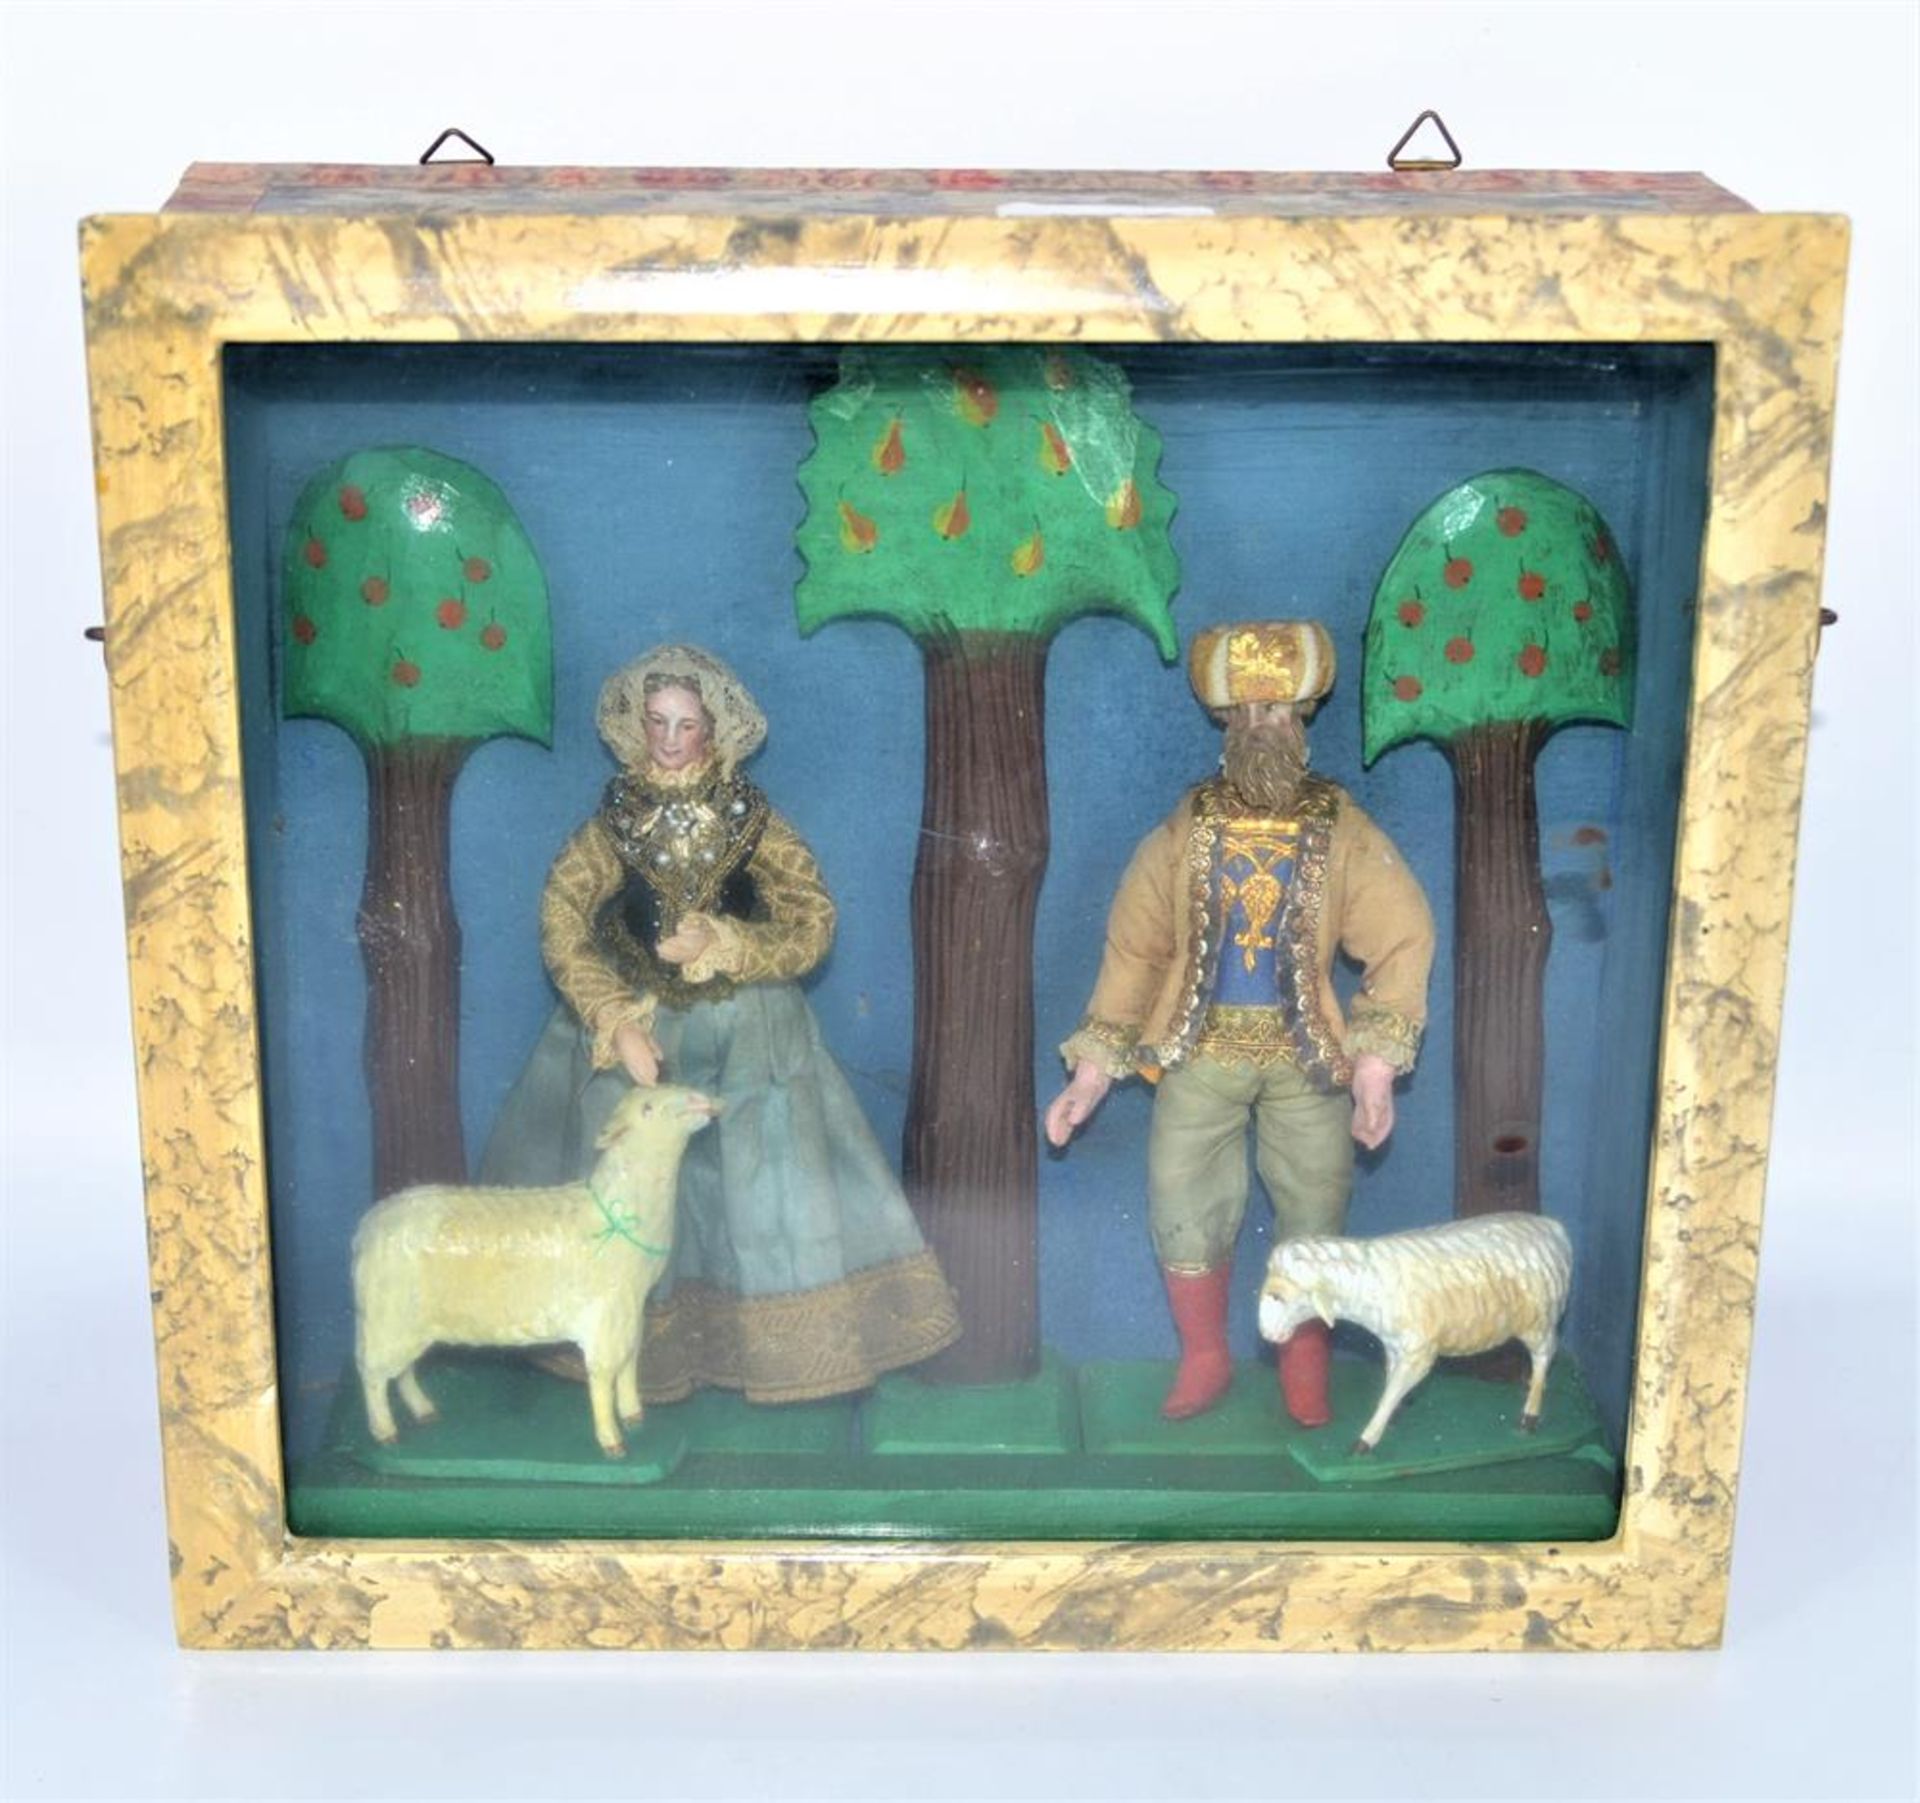 Schaukasten Trachtenpaar Schäfer Kastenbild Böhmen, antike Puppen mit aufwendig verzierter